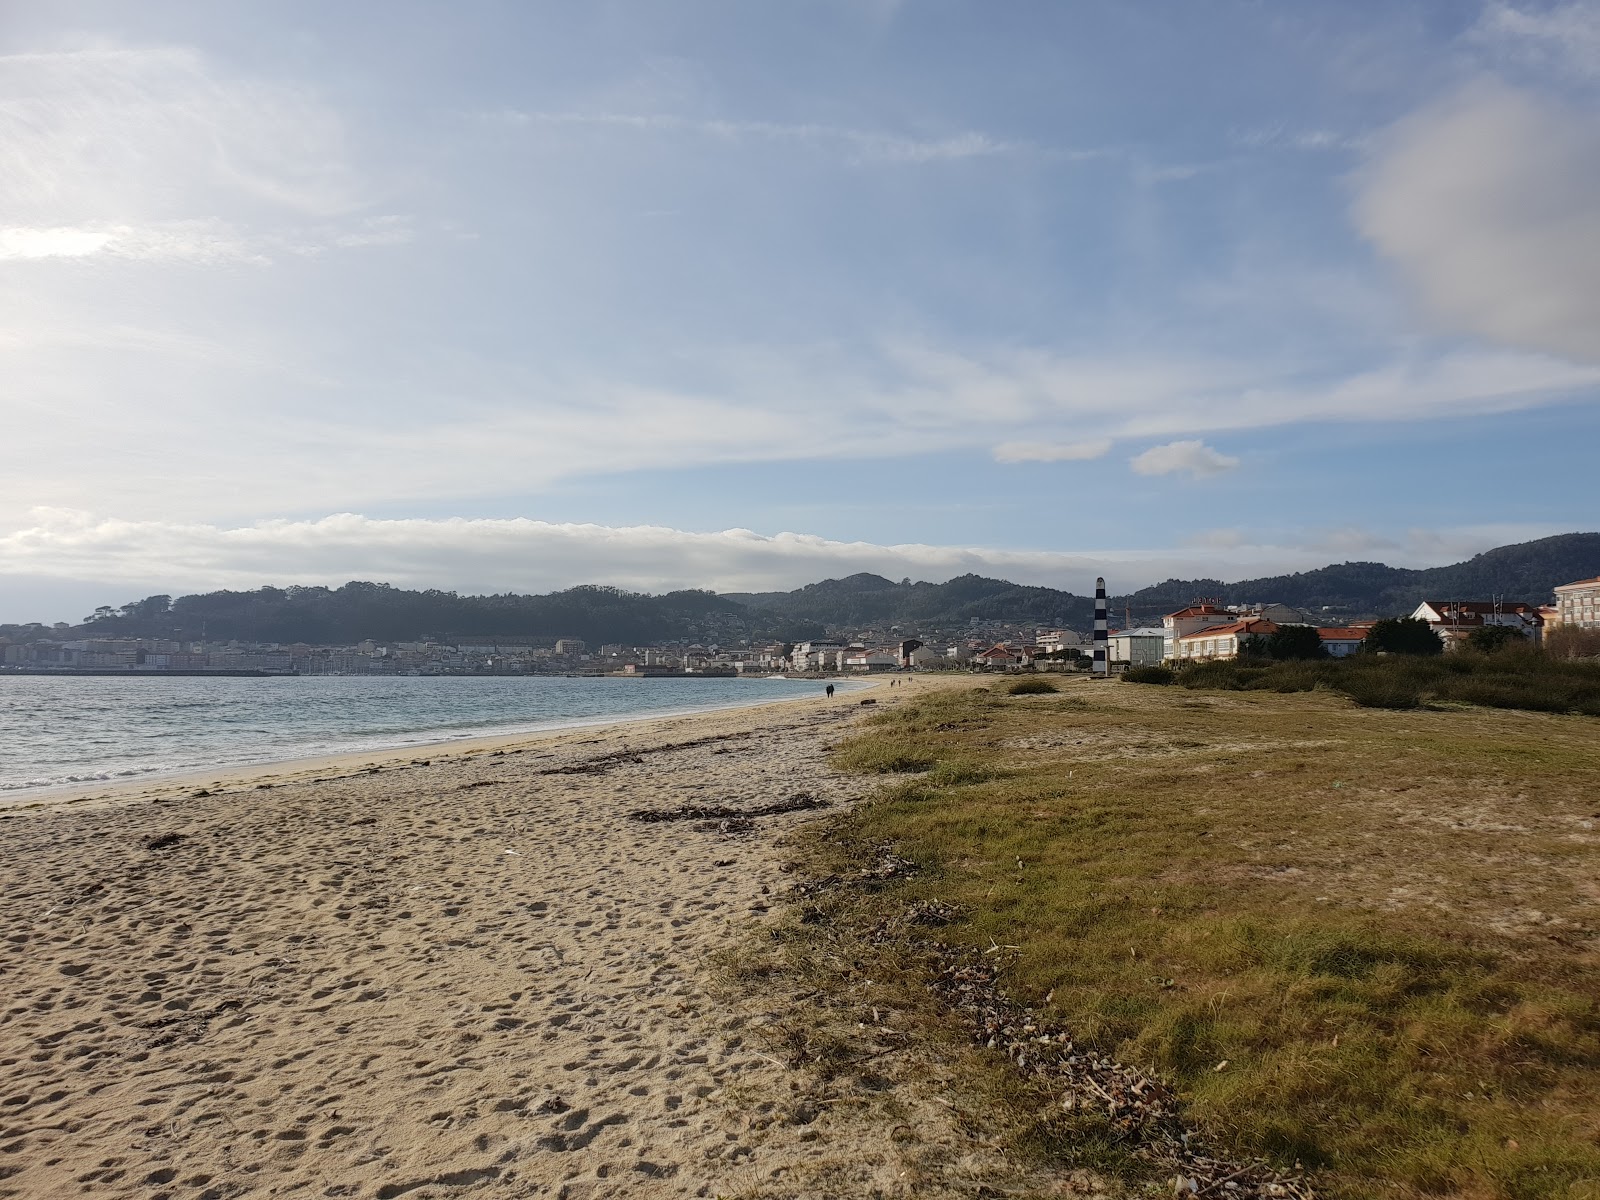 Praia de Moana'in fotoğrafı ve yerleşim